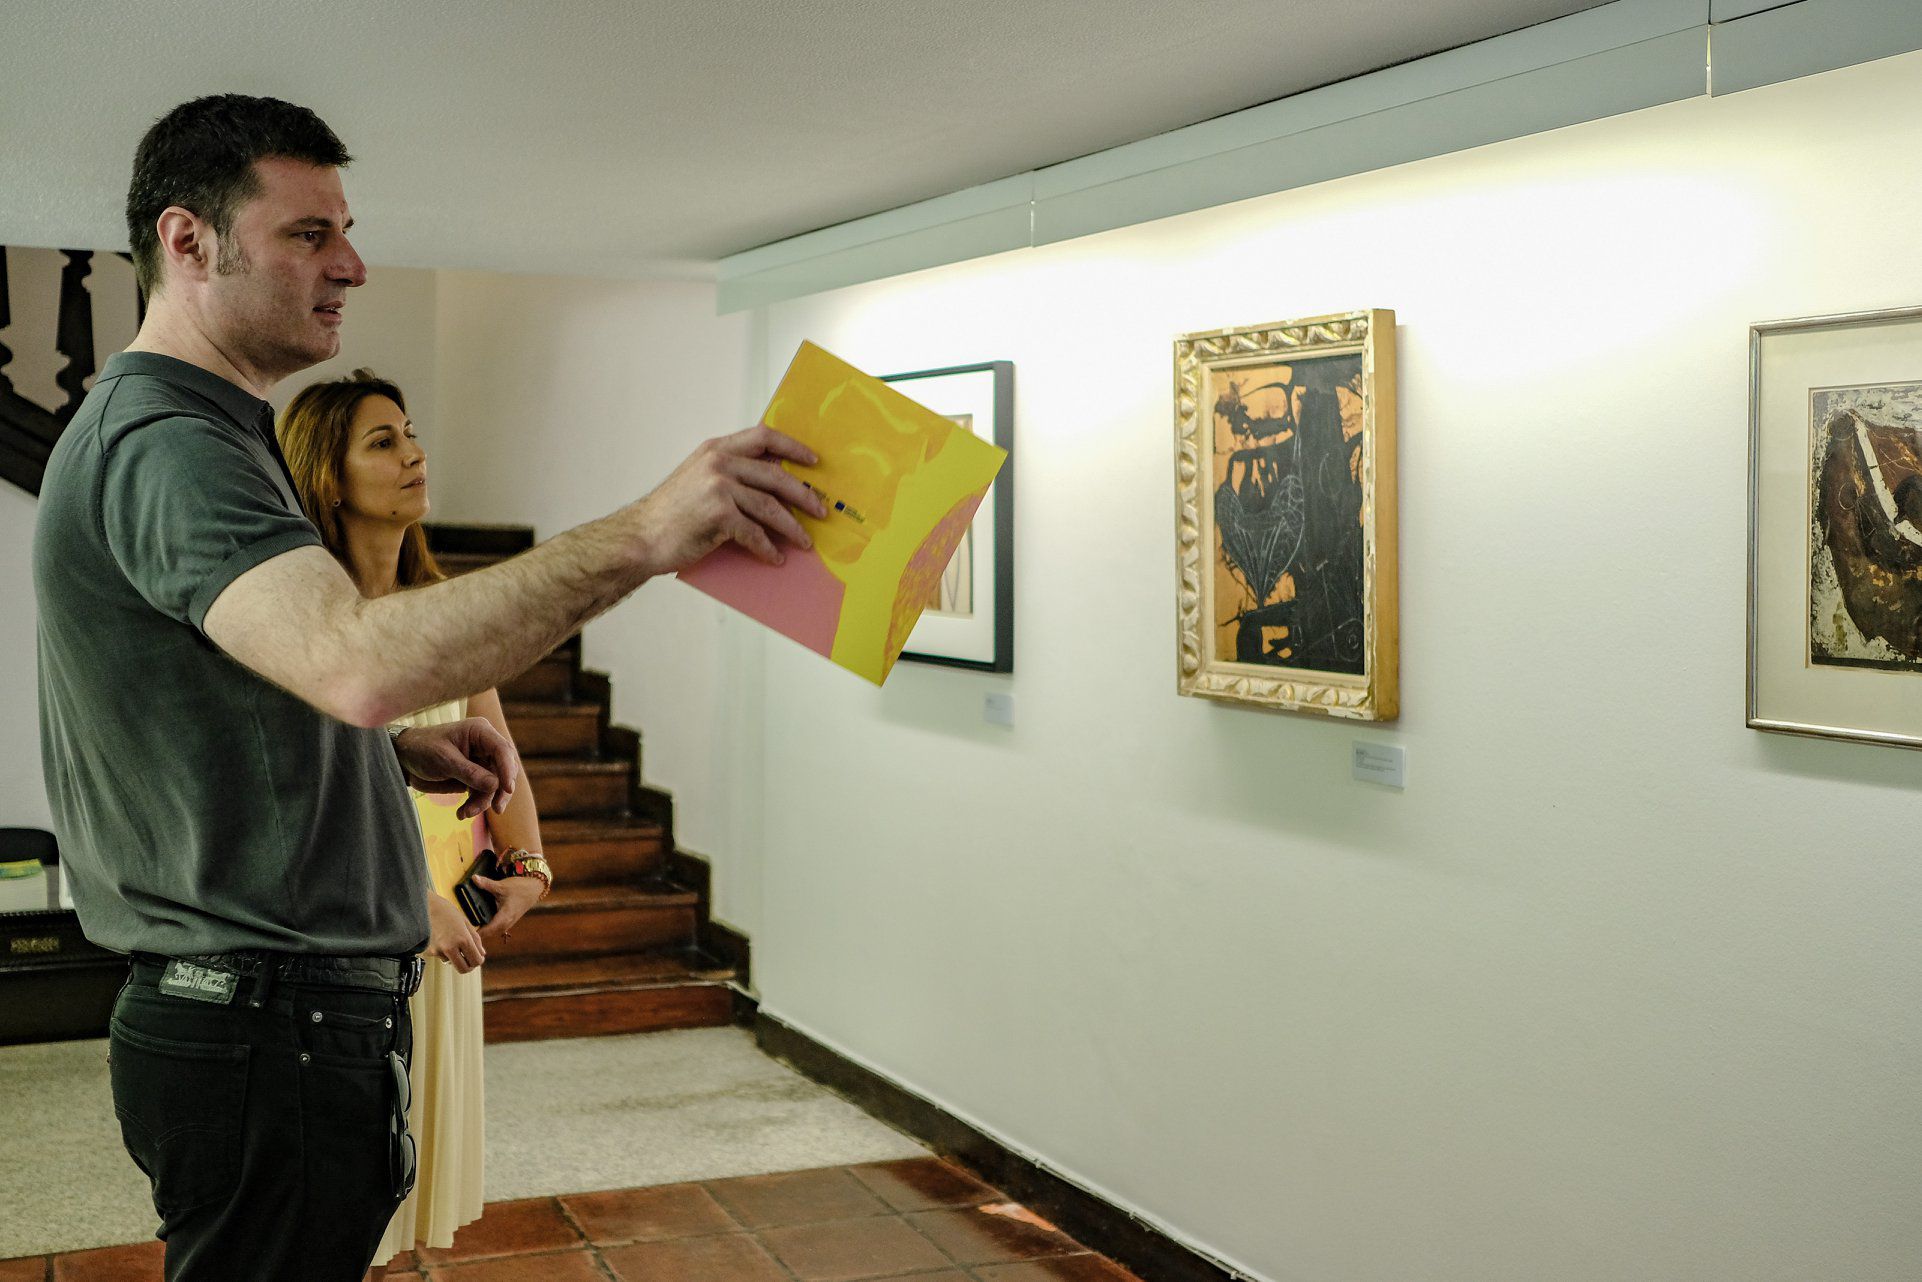 Braga recebe exposição “A Origem das Pequenas Invenções”, de Mário Cesariny